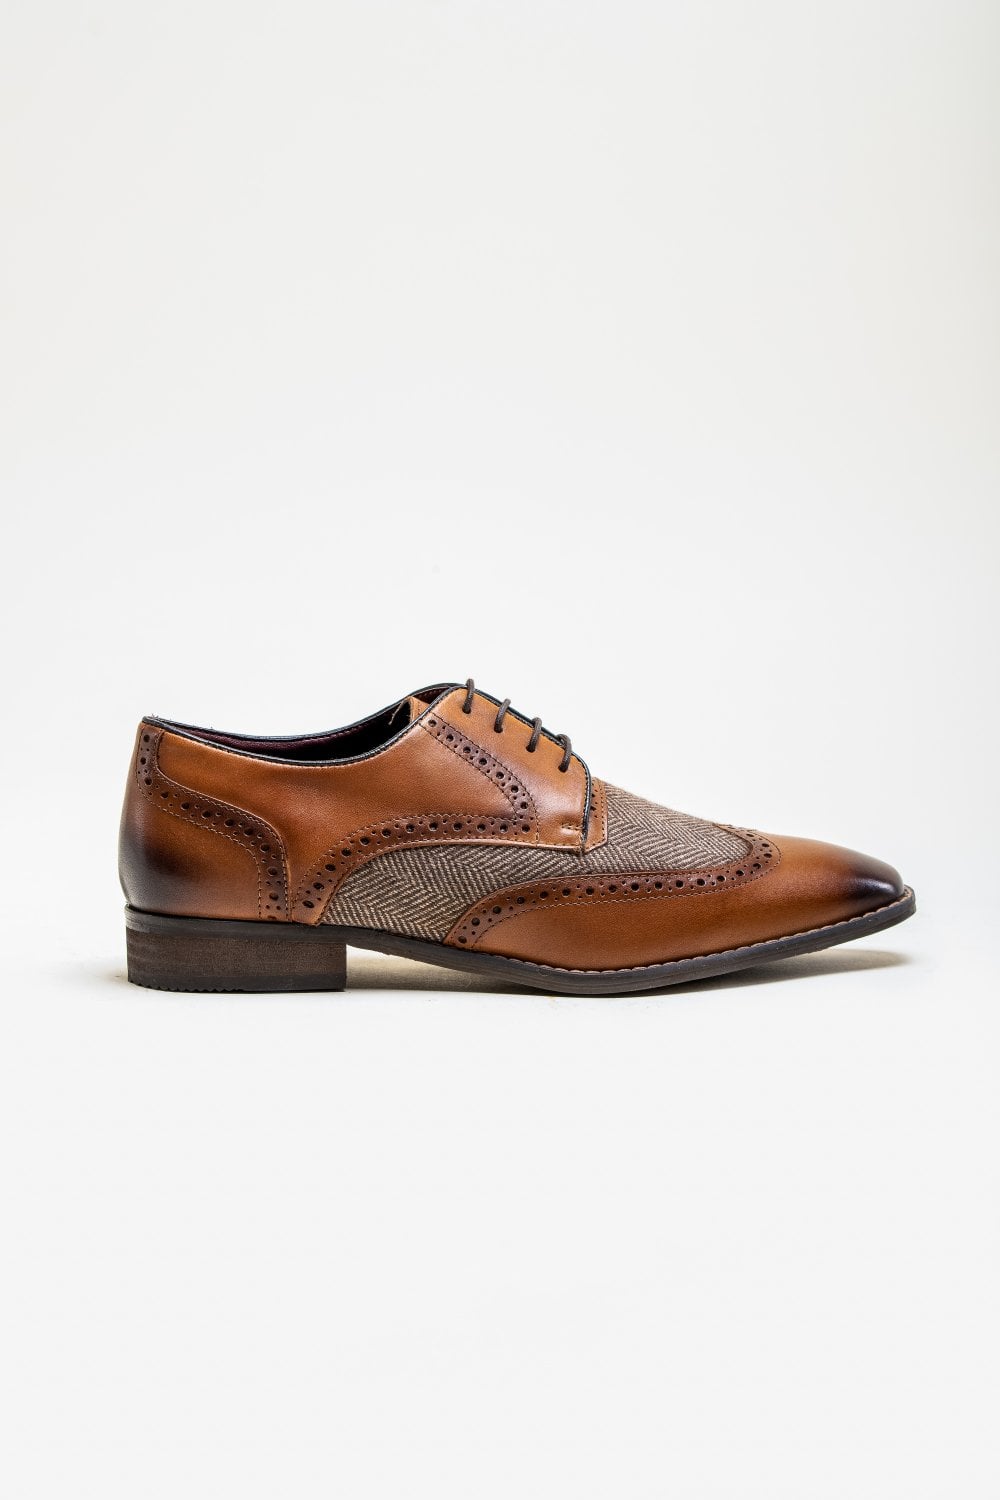 Chaussures Cavani Faro Tweed - Marron - Schoenen